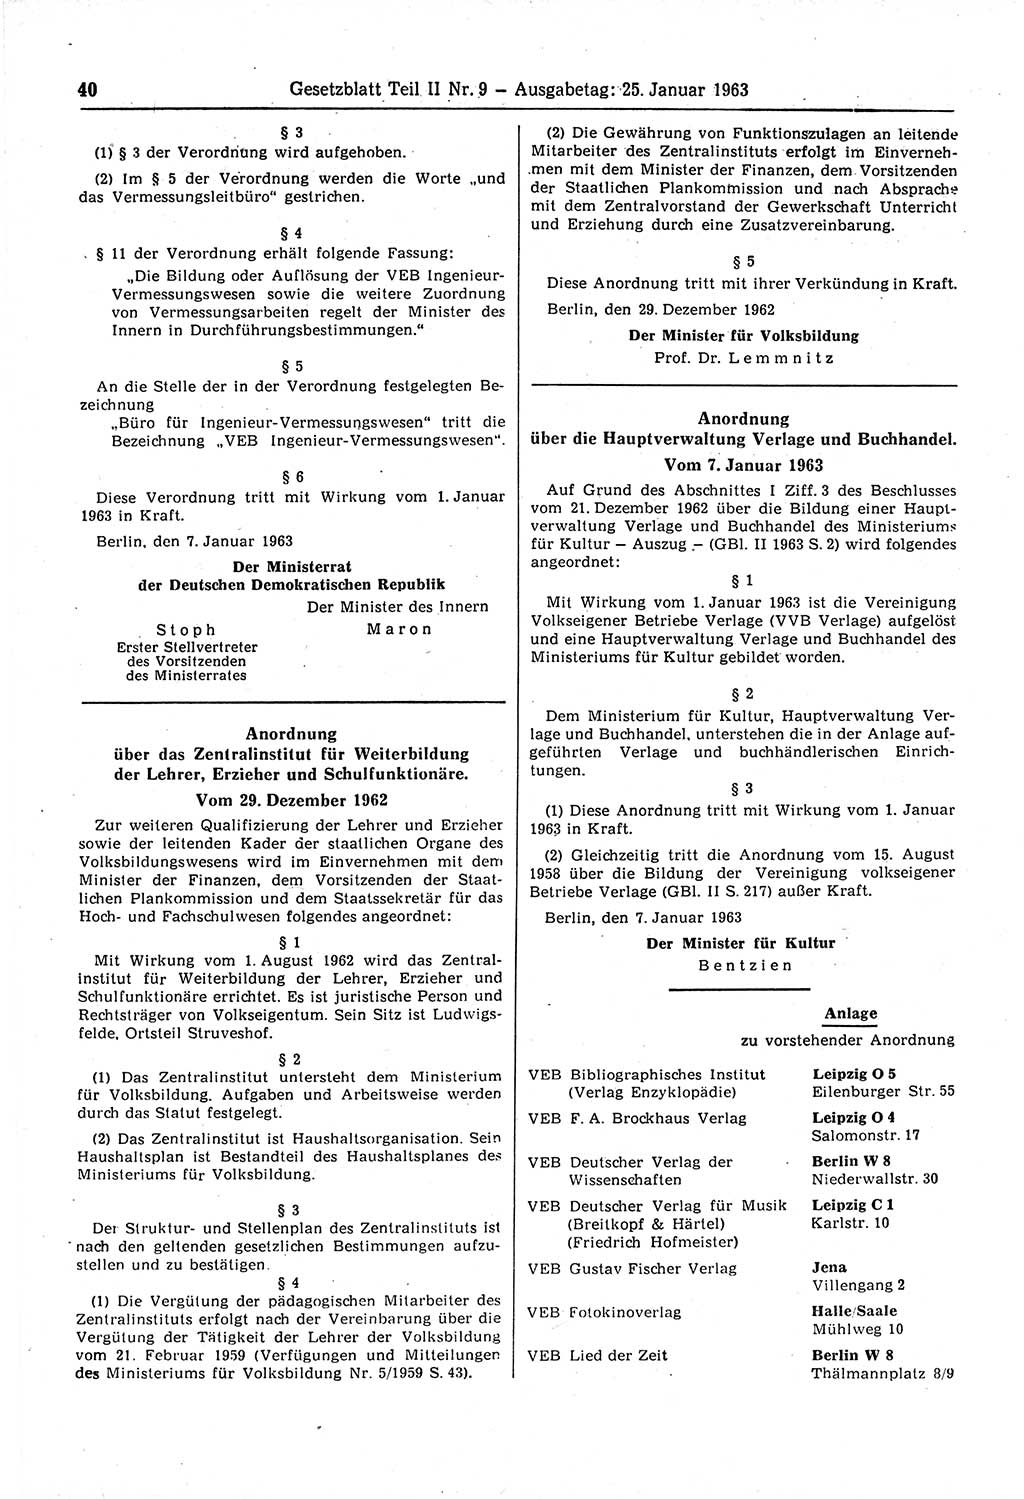 Gesetzblatt (GBl.) der Deutschen Demokratischen Republik (DDR) Teil ⅠⅠ 1963, Seite 40 (GBl. DDR ⅠⅠ 1963, S. 40)